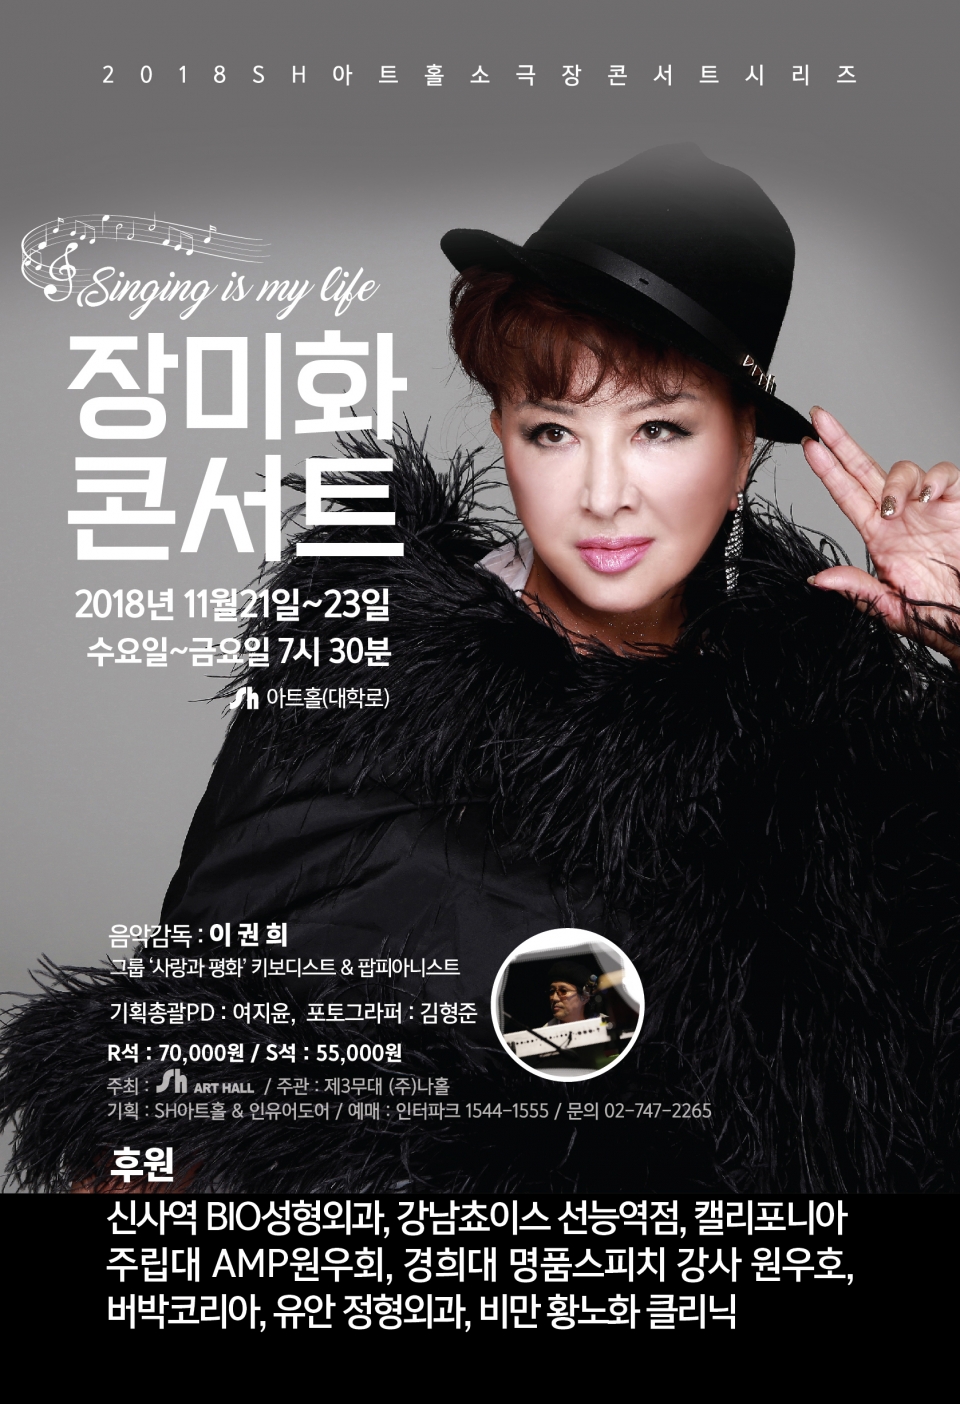 가수 장미화의 'Singing is my life' 콘서트가 11월 21일부터 23일까지 서울 대학로 Sh아트홀에서 개최된다. / Sh아트홀 제공